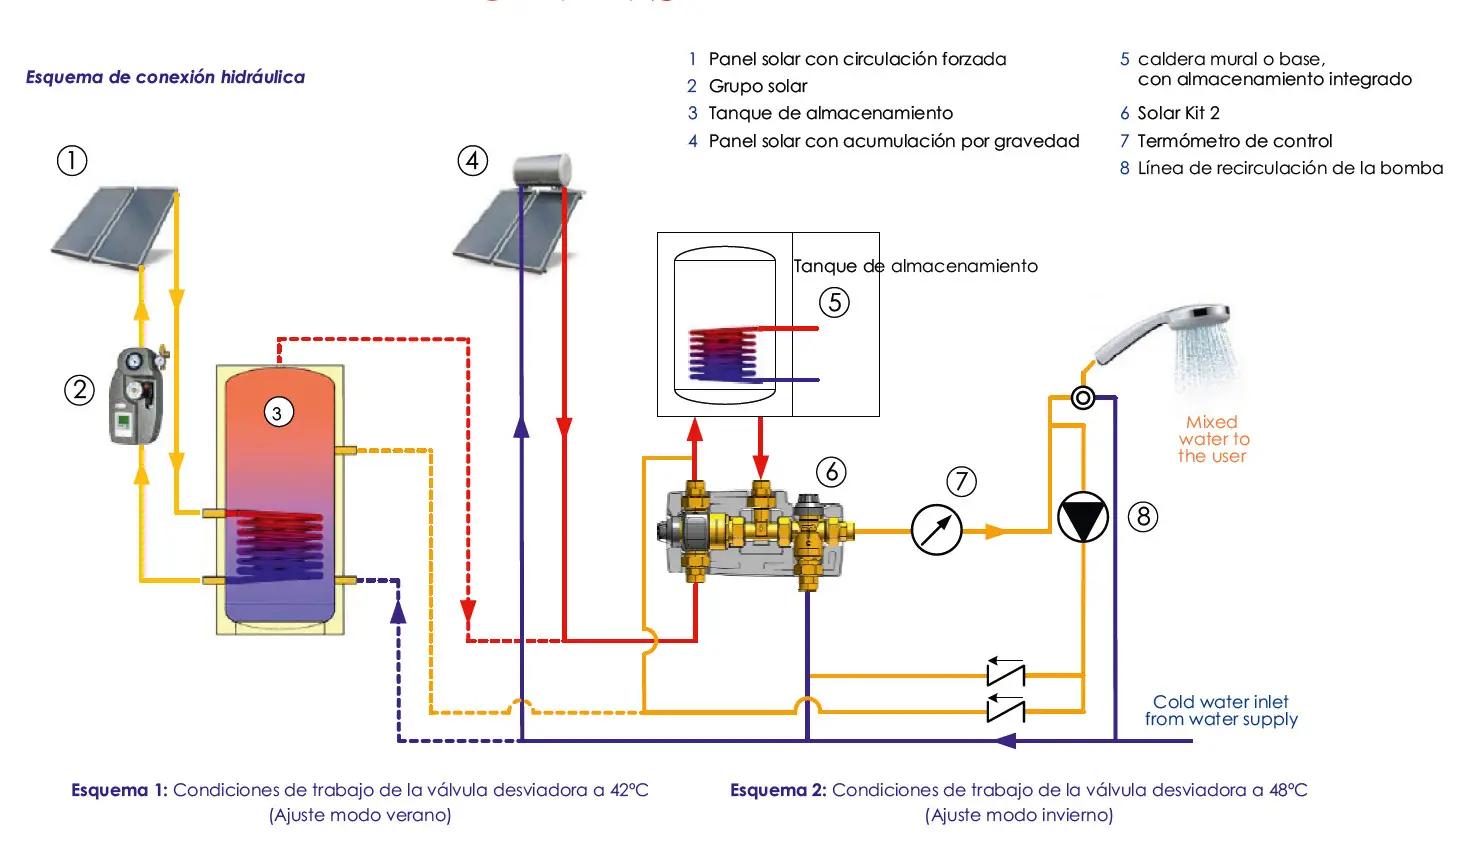 ajustar regulador termostatico termo placa solar - Cómo se regula la temperatura de un termotanque solar